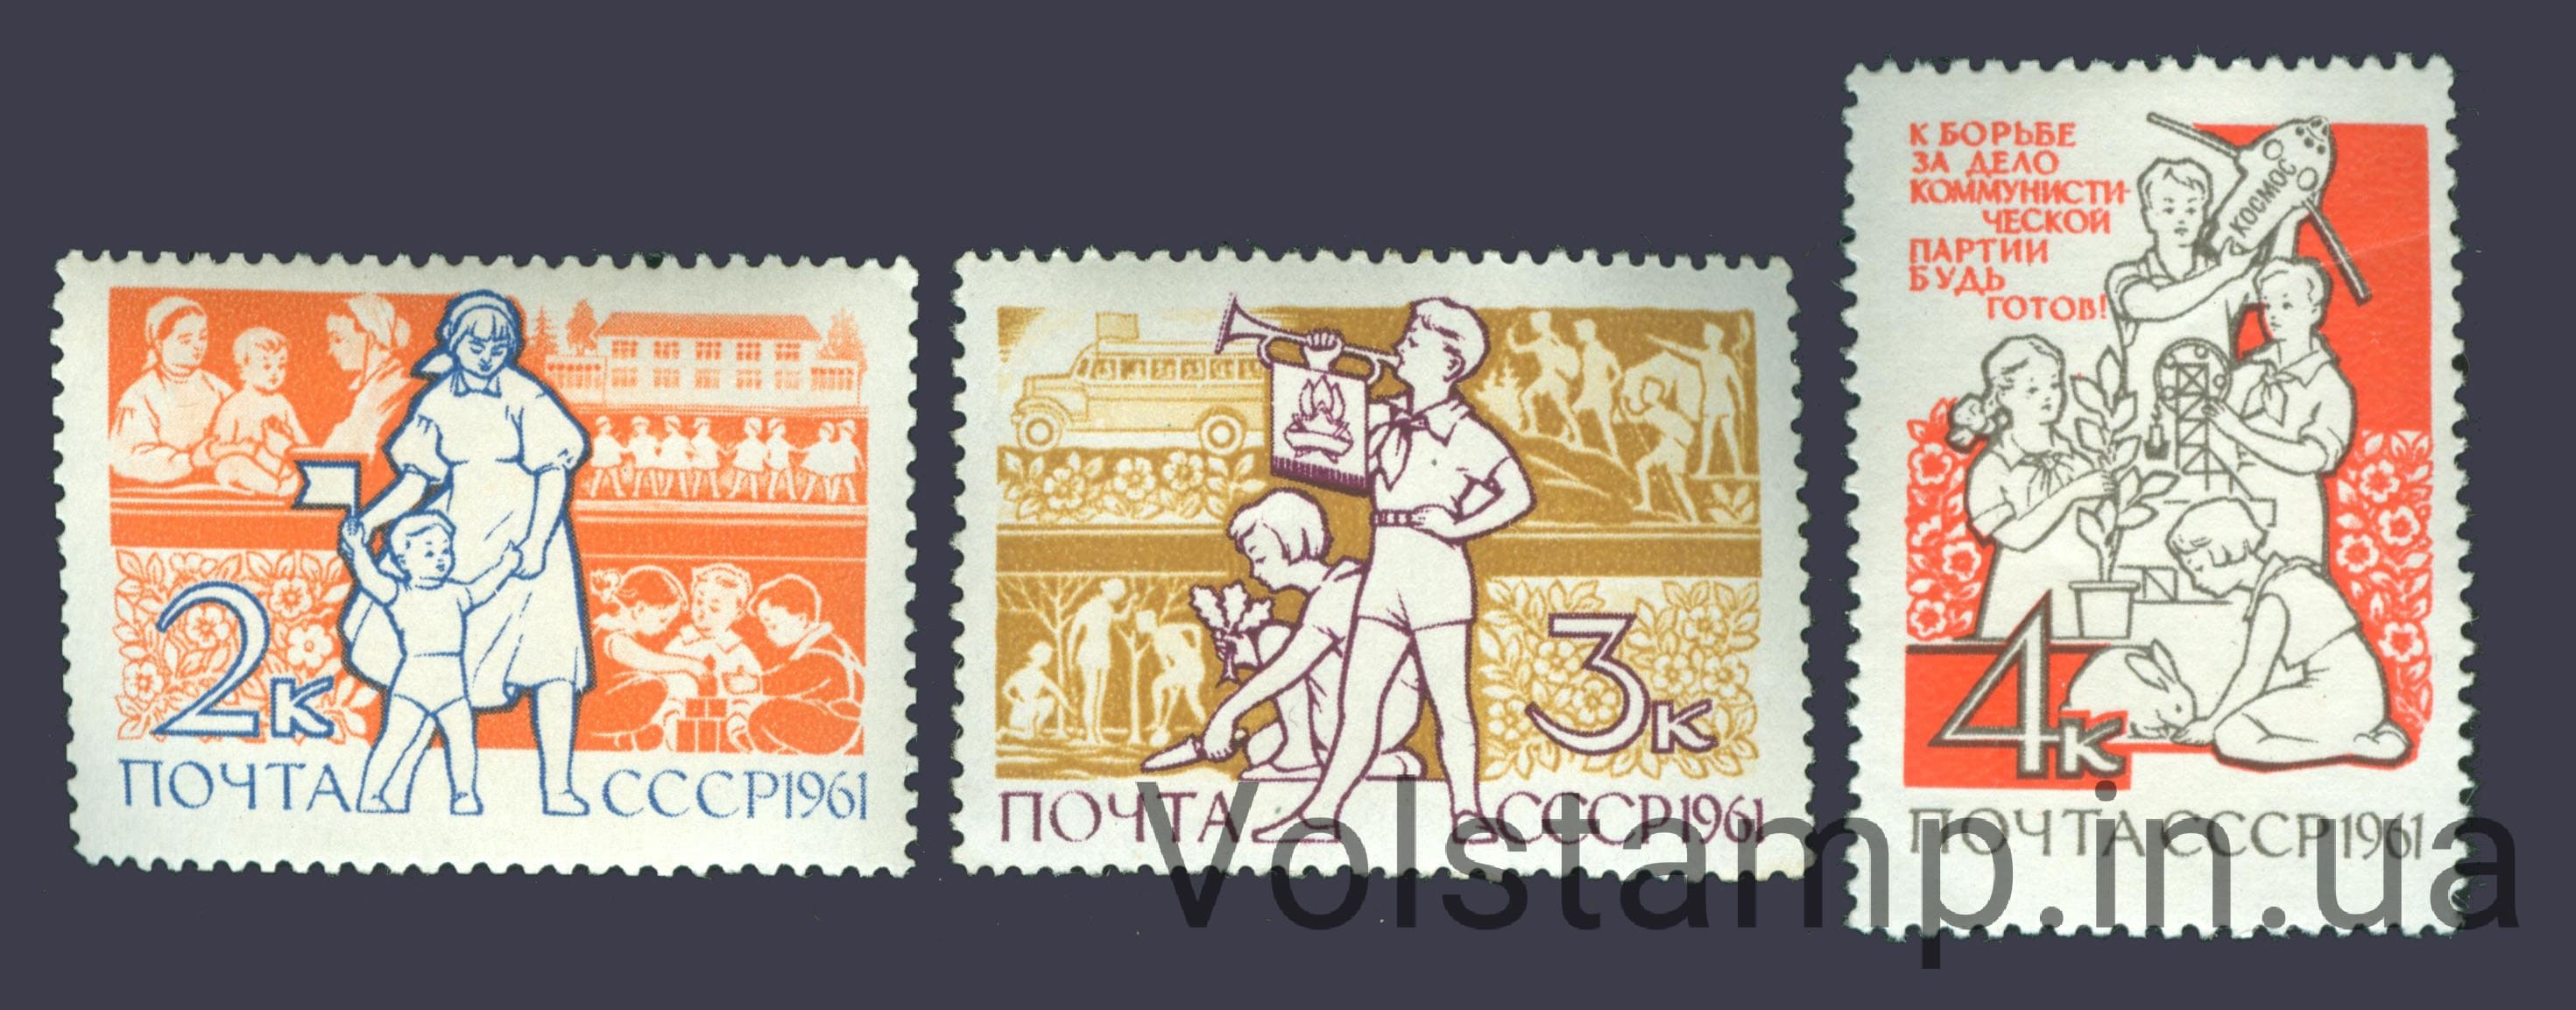 1961 серия марок Международный день защиты детей №2492-2494